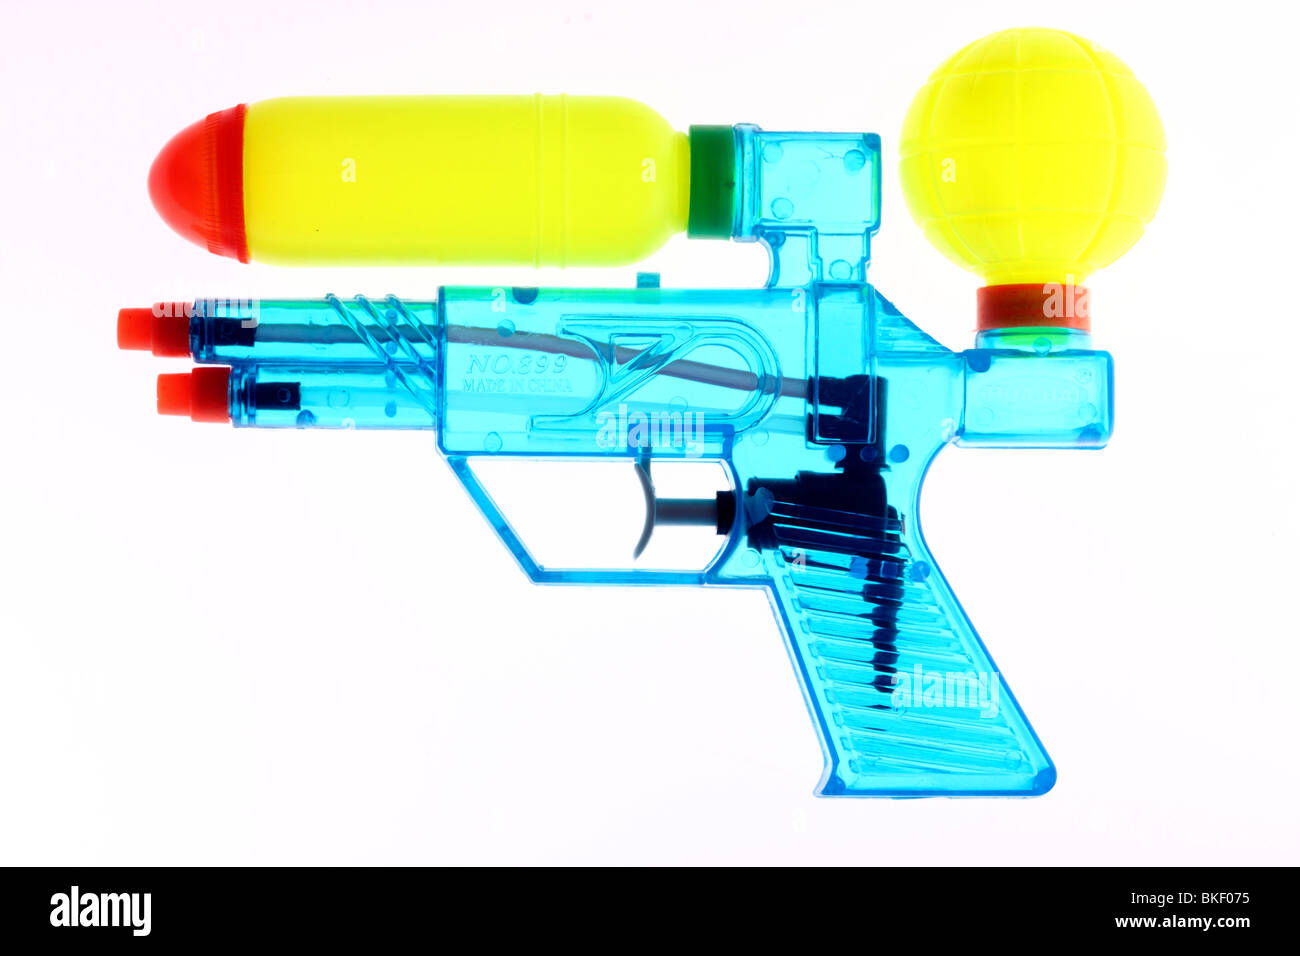 Pistola de agua, pistola de agua, juguete, transparente. Foto de stock